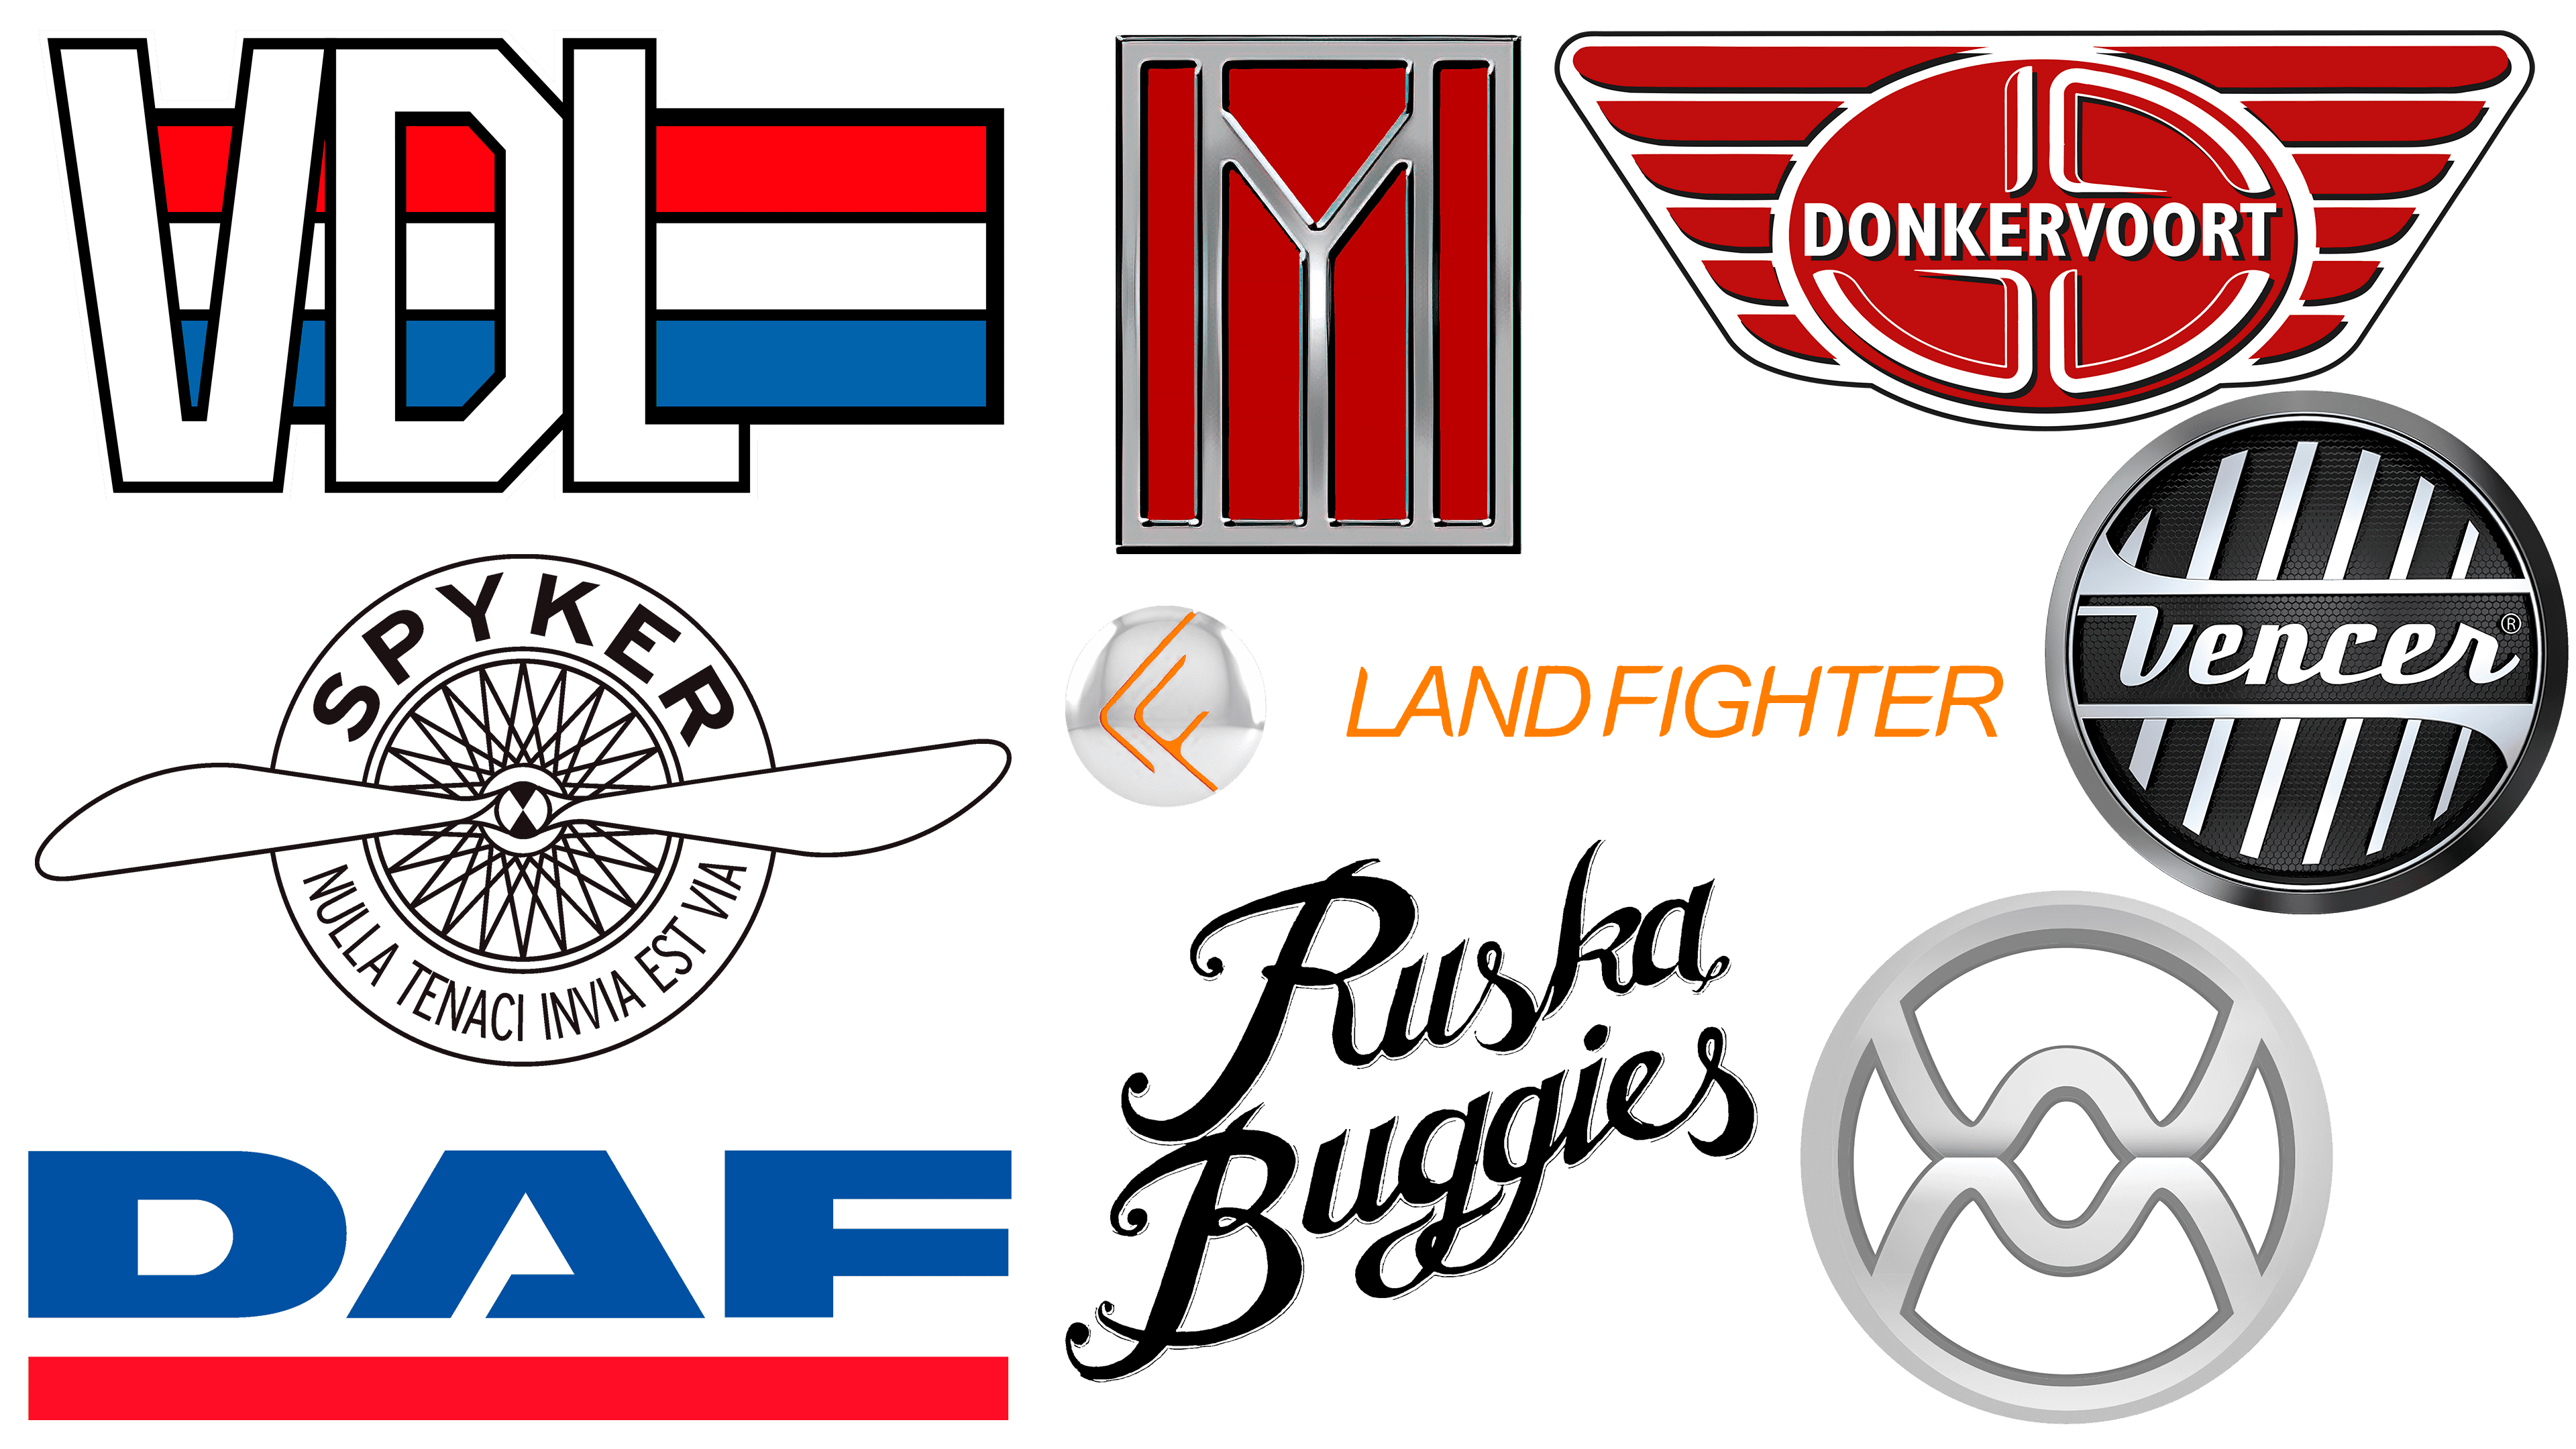 Dutch car brands